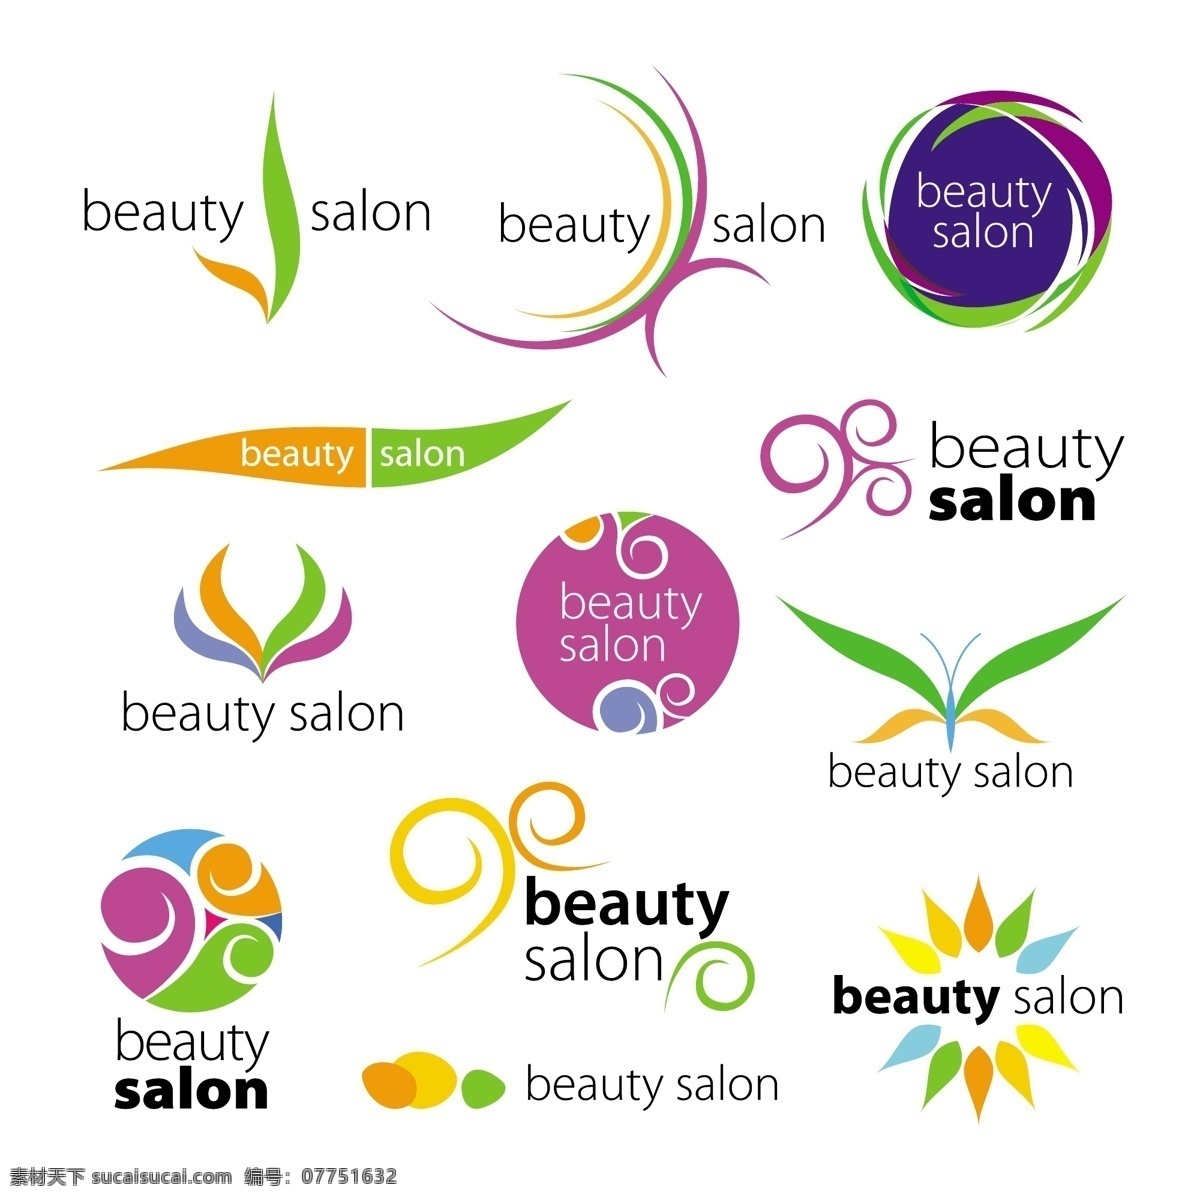 美容 行业 logo 创意 标志设计 商标设计 logo图形 标志图标 矢量素材 白色